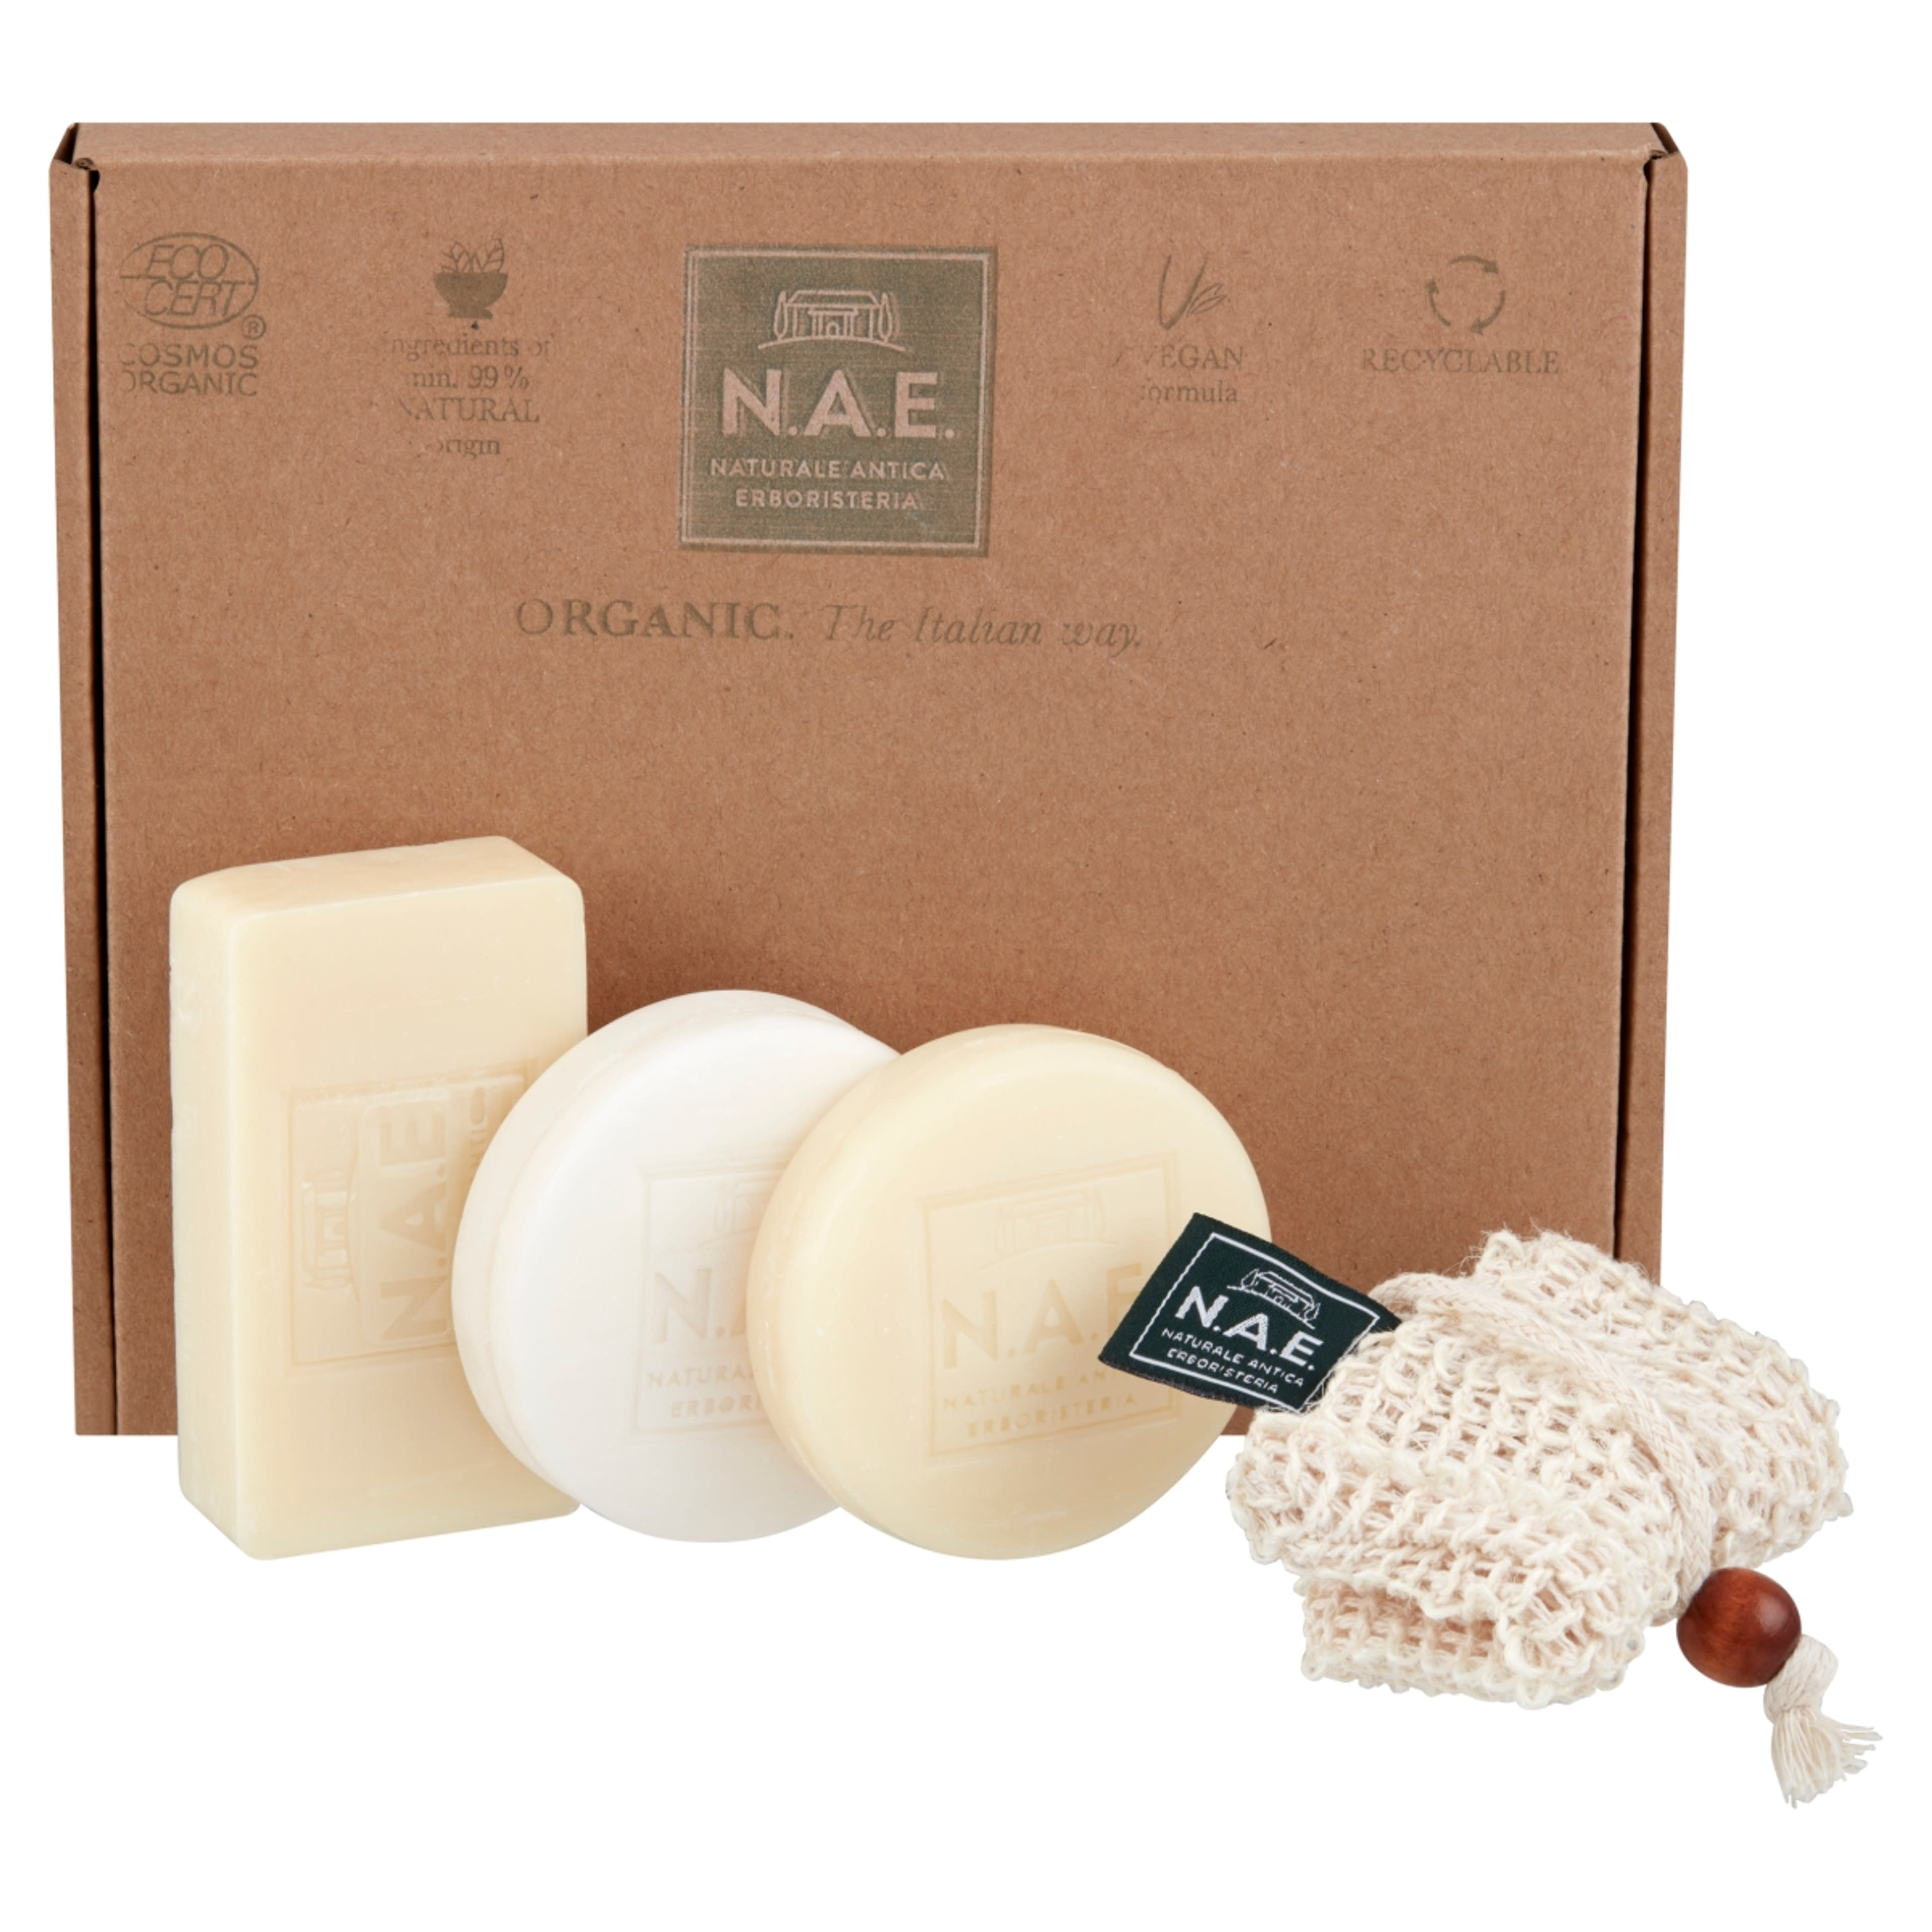 N.A.E. műanyagmentes doboz szilárd termékekkel bio összetevőkből 100g+85g+78g - 1 db-2